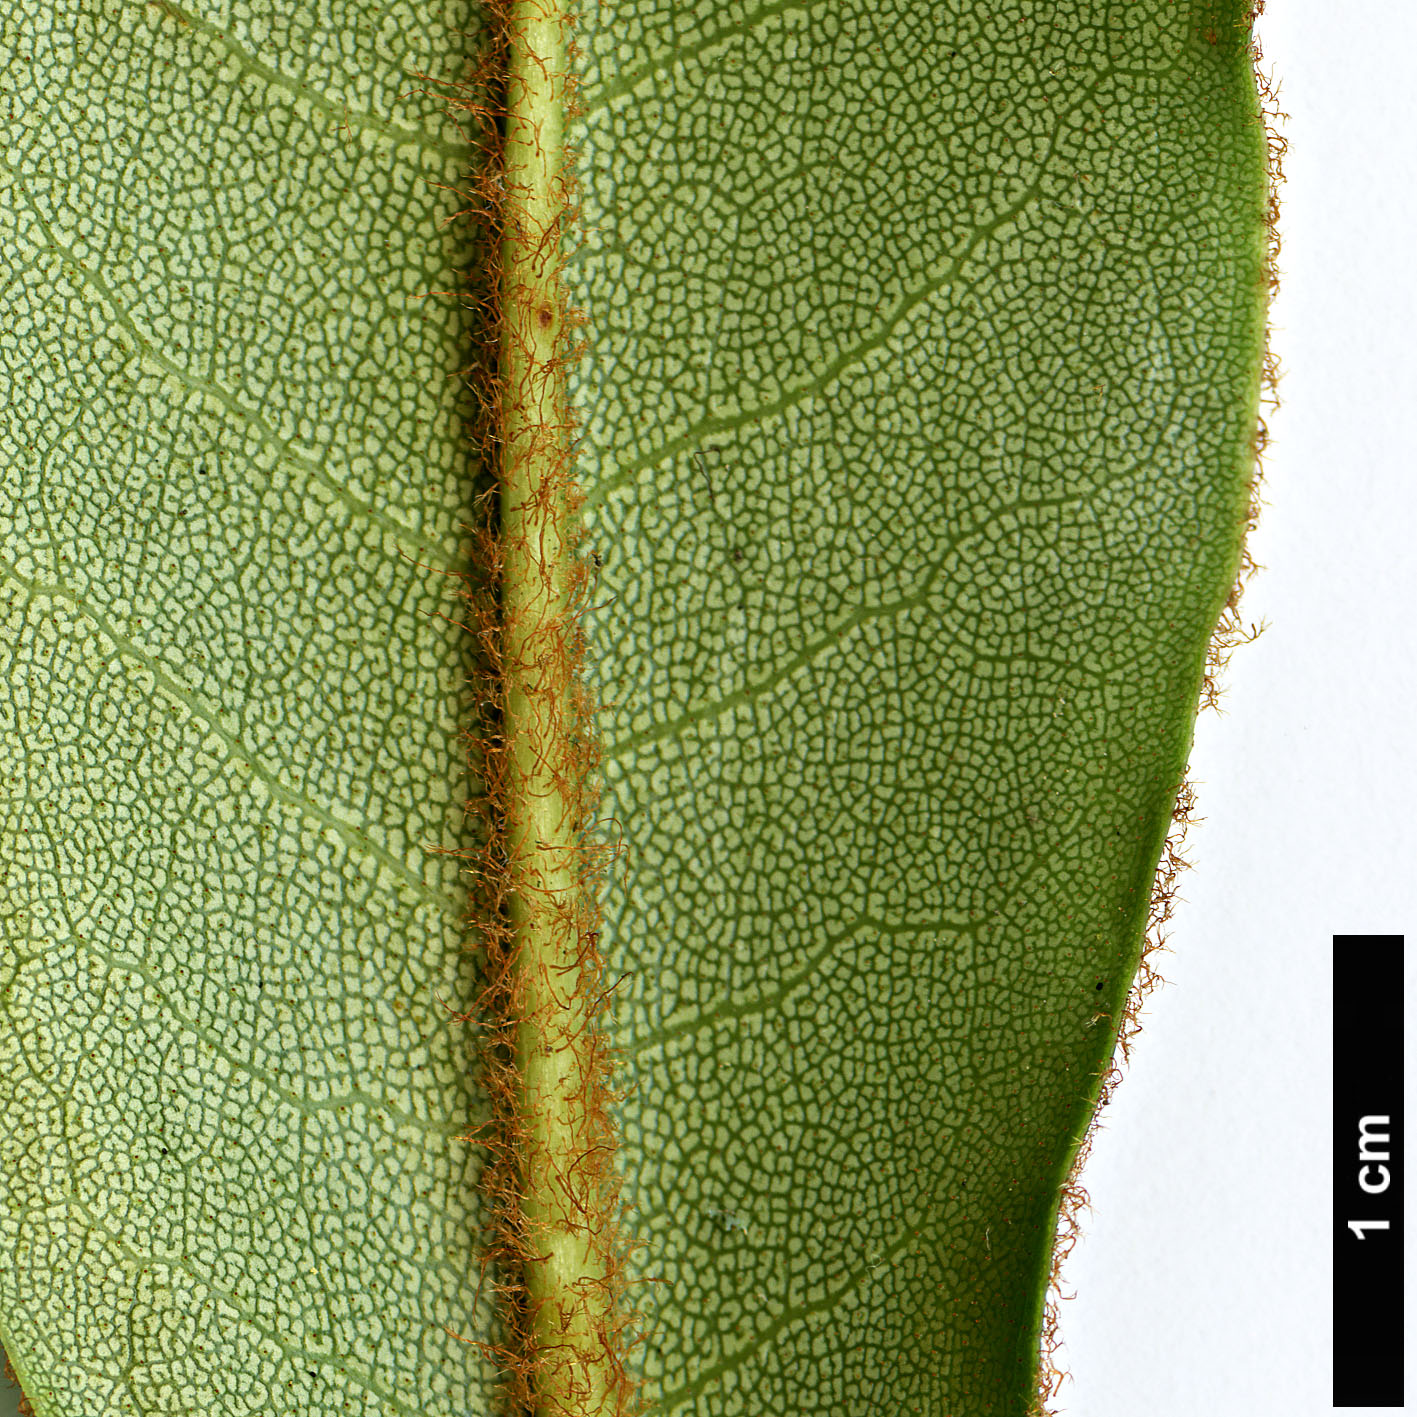 High resolution image: Family: Ericaceae - Genus: Rhododendron - Taxon: longesquamatum